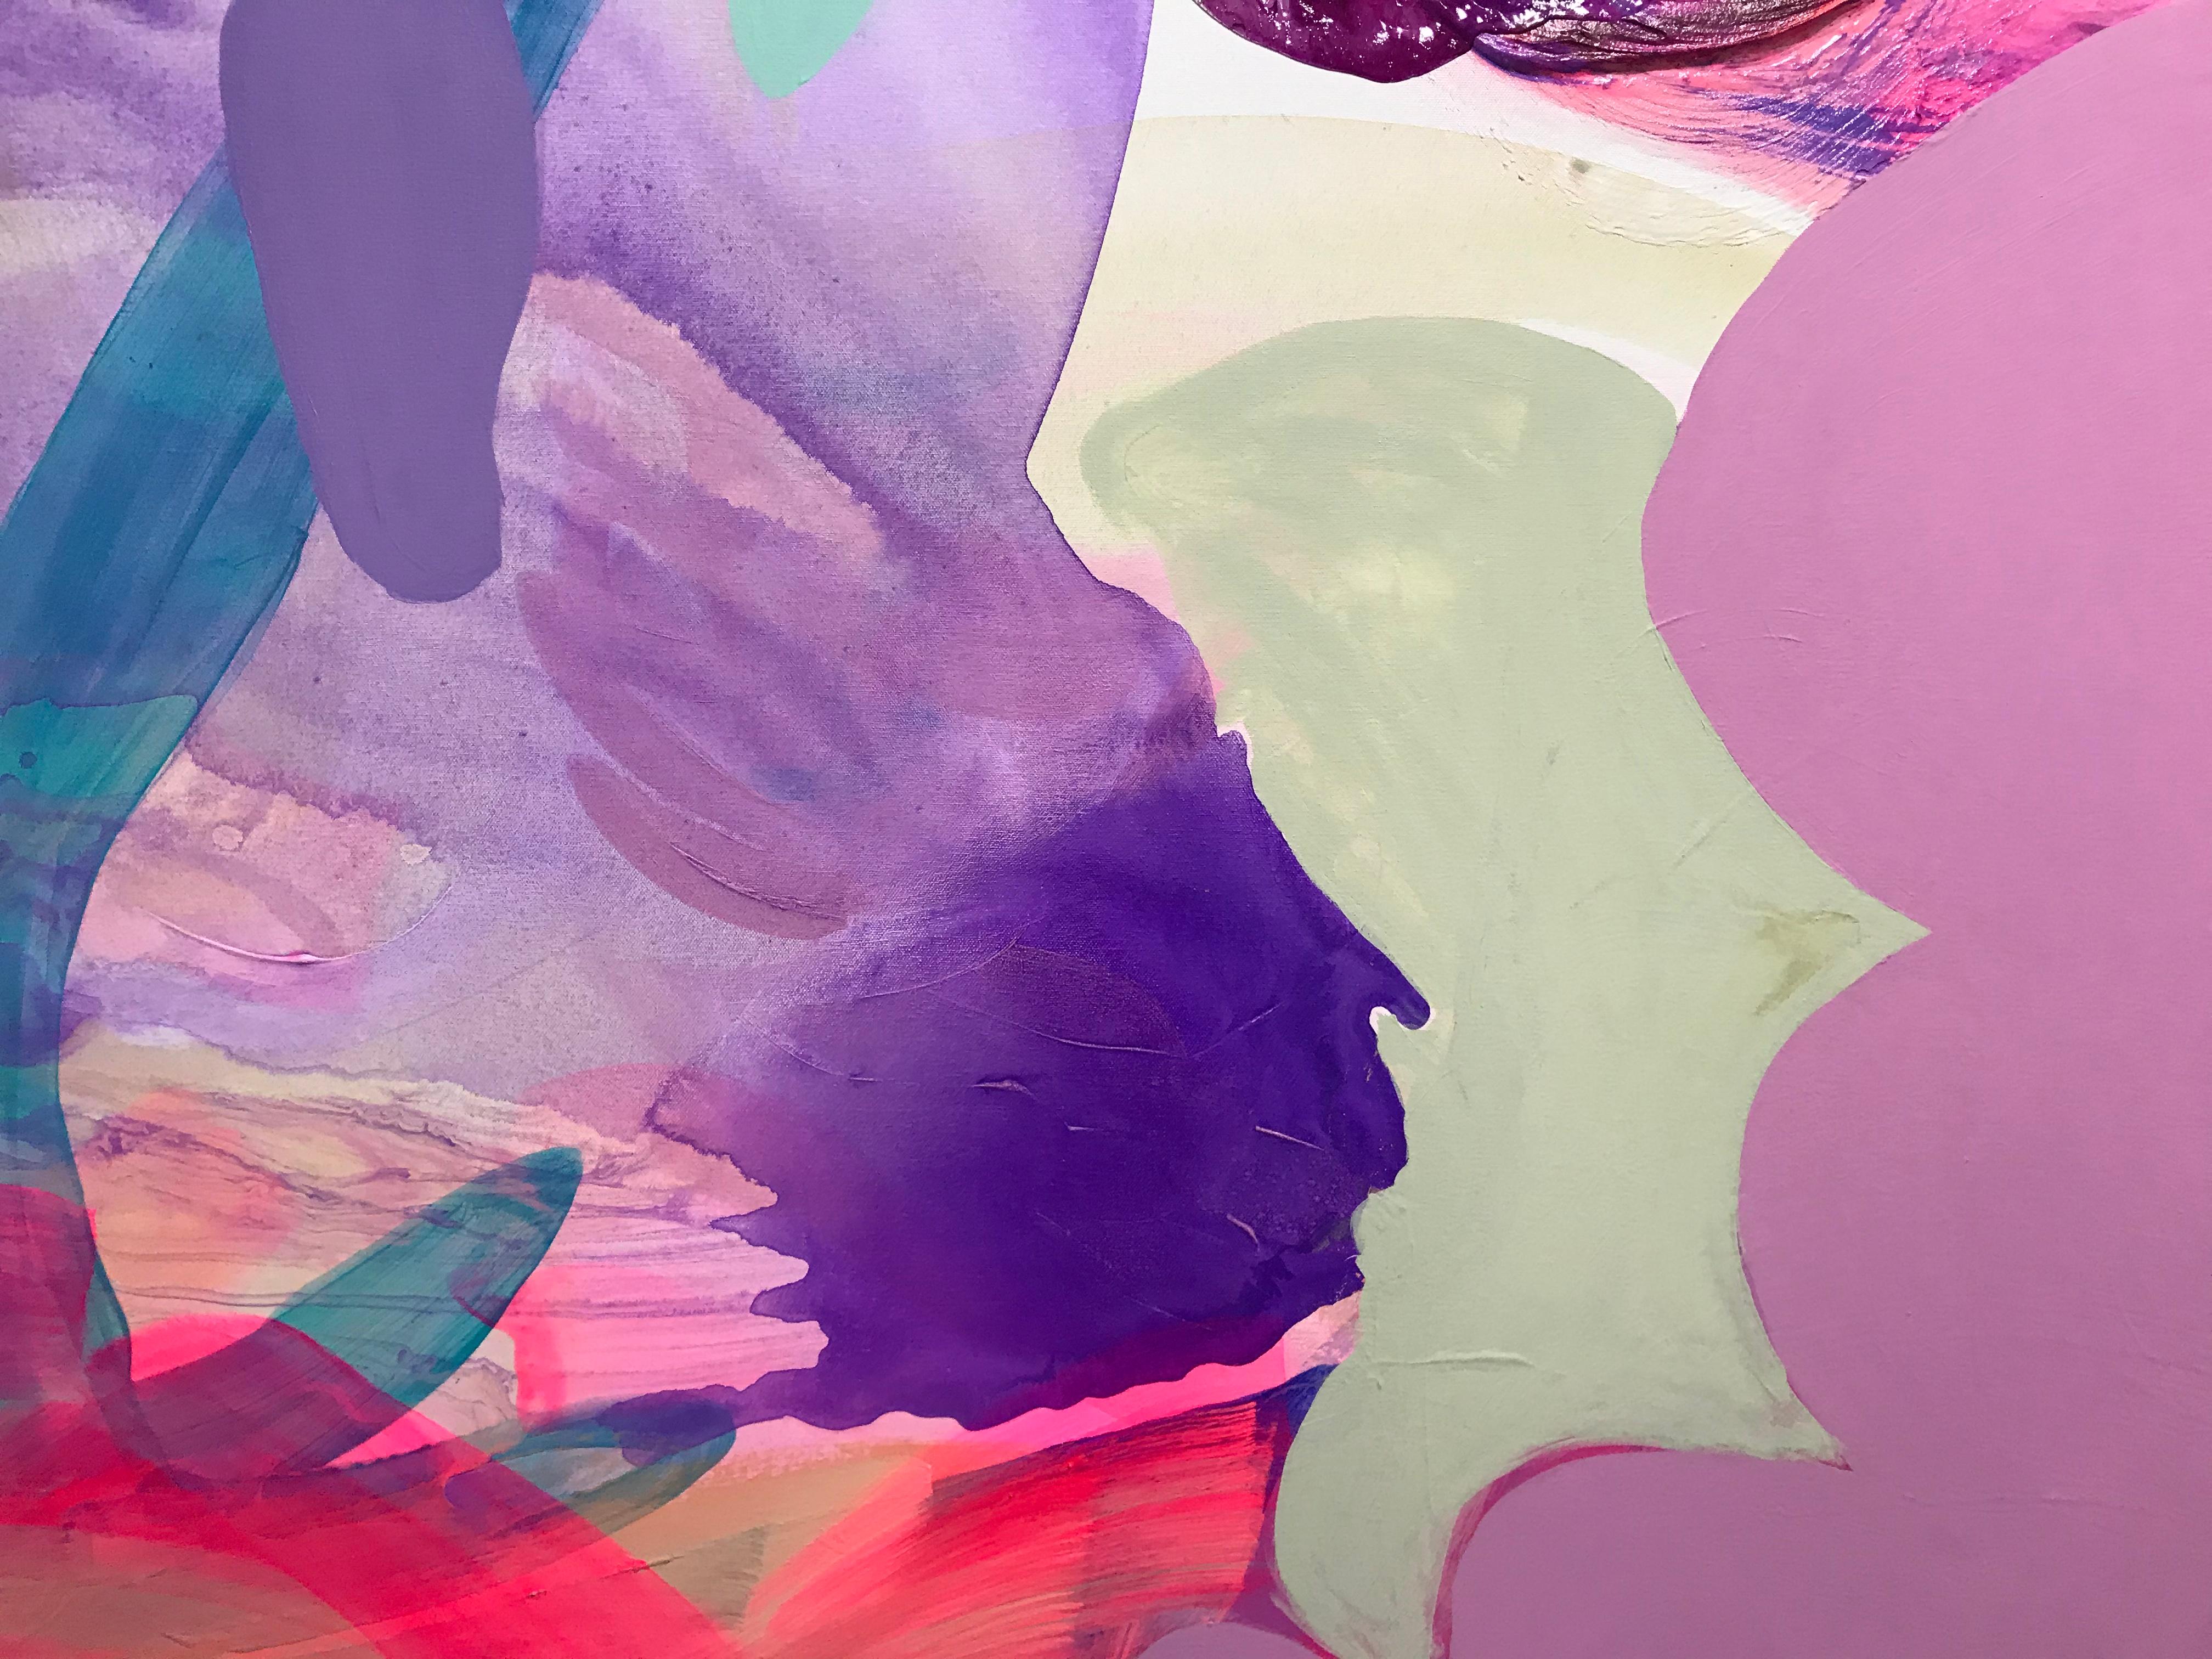 Peinture abstraite contemporaine « Aquatic Forest » en violet, bleu turquoise et rose - Painting de Debra Drexler